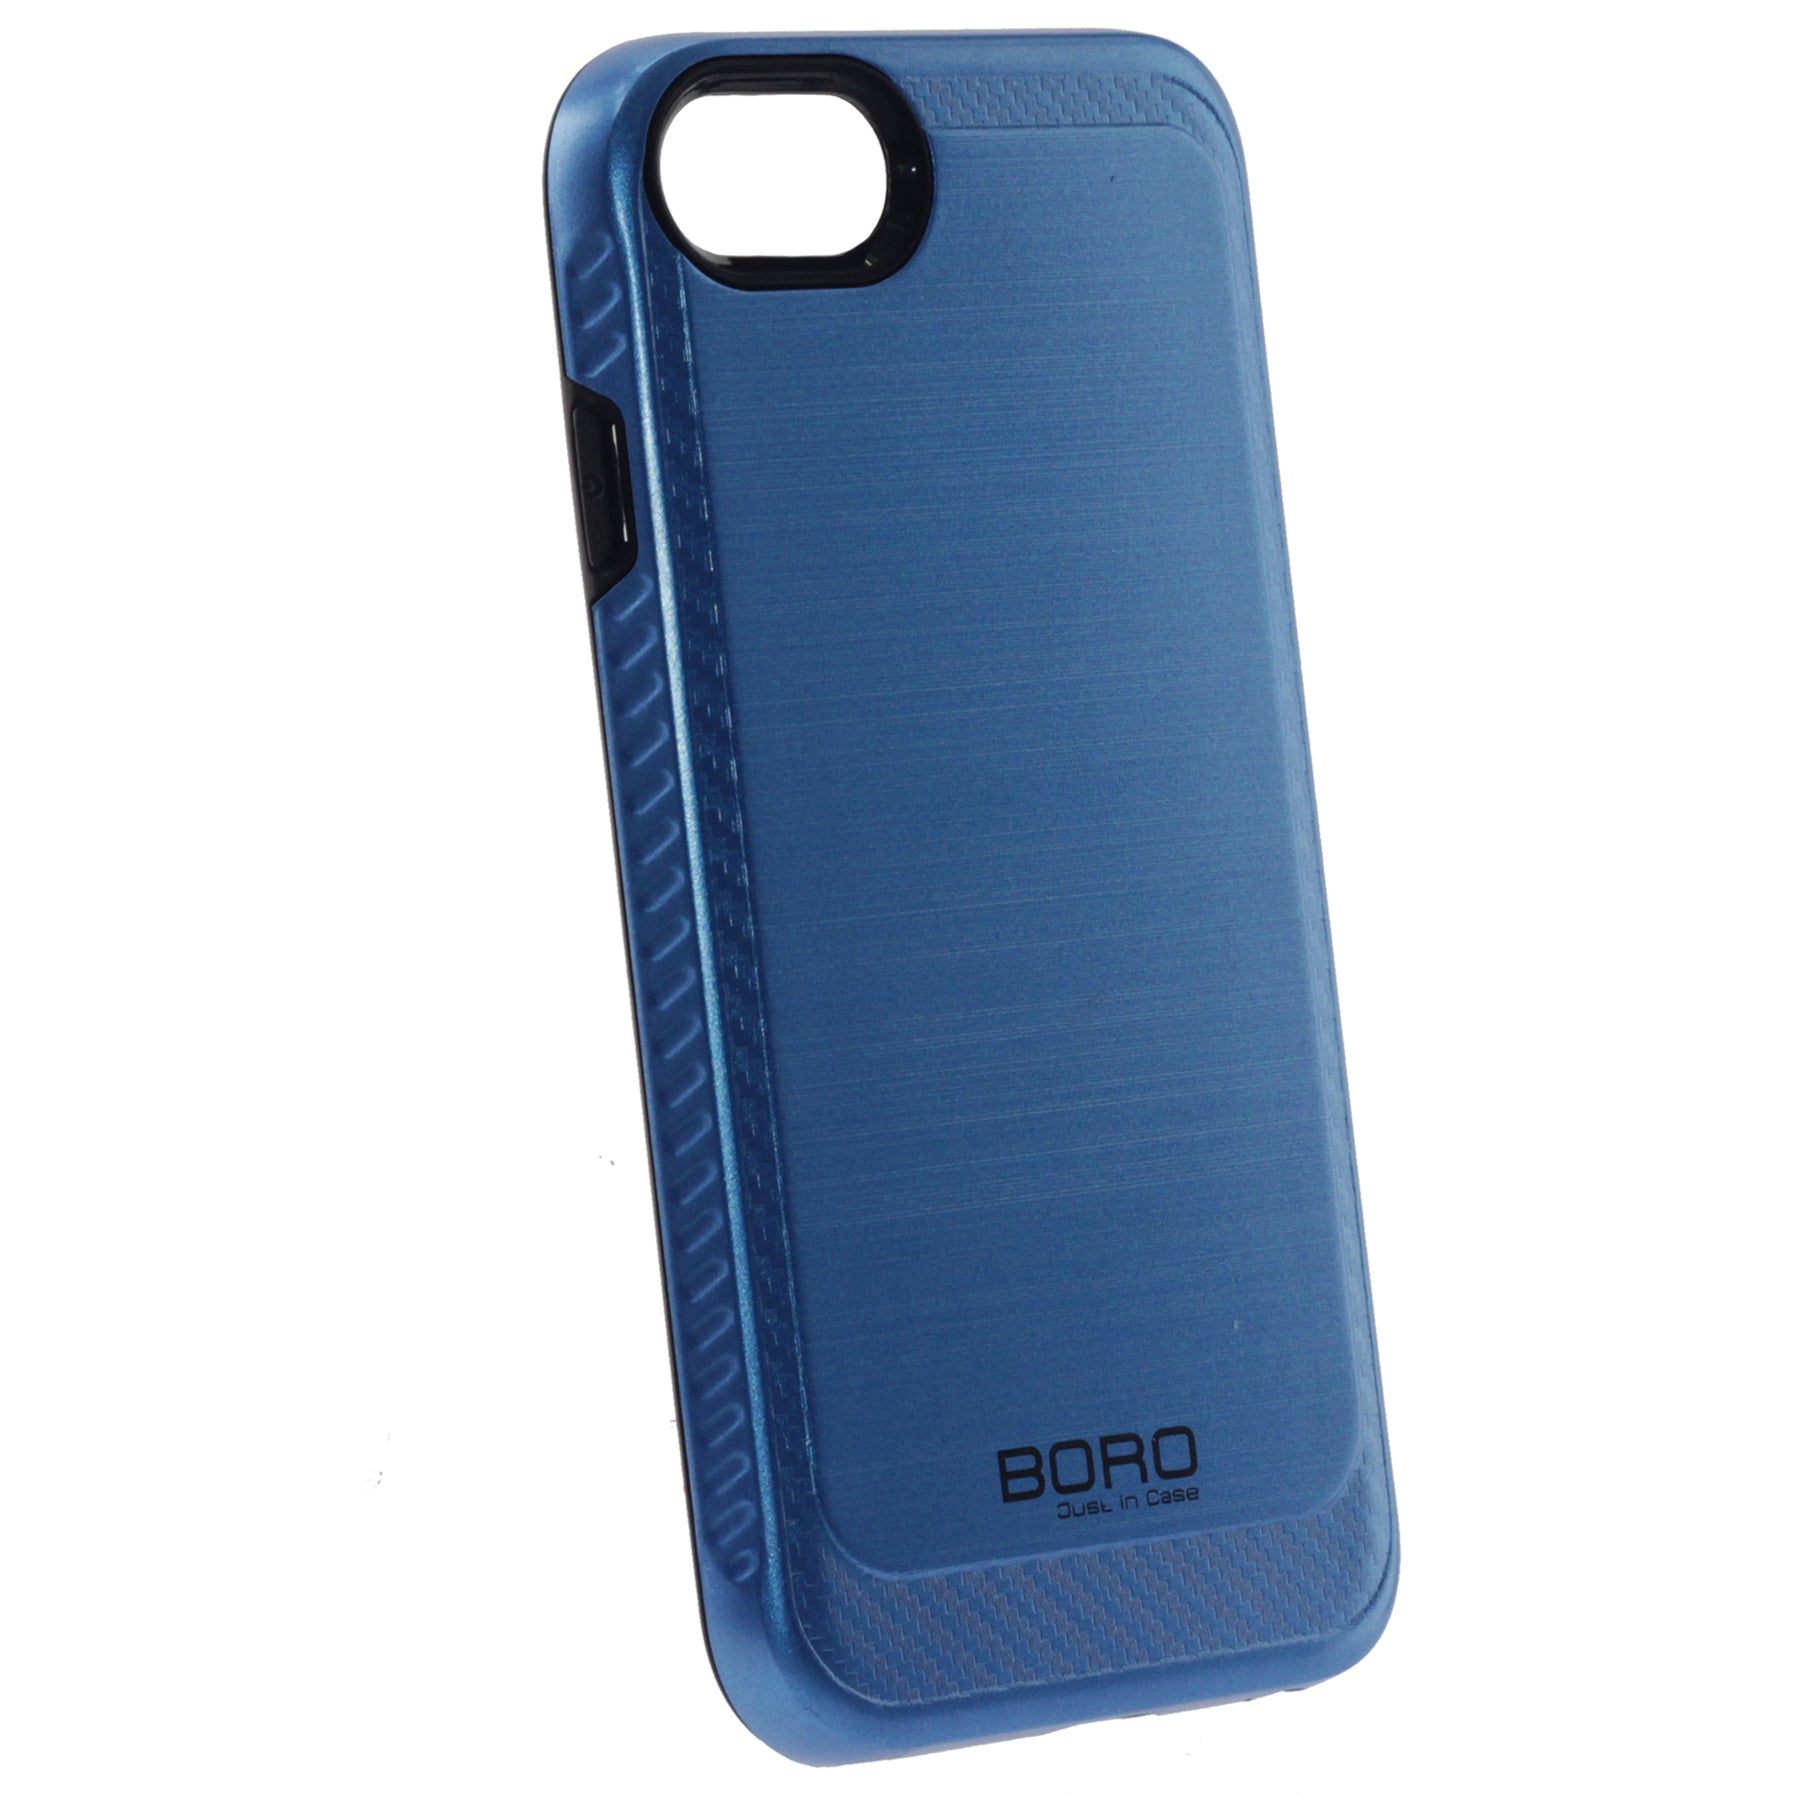 Apple iPhone 6/7/8/Se 2020, Armor Case, Color Blue